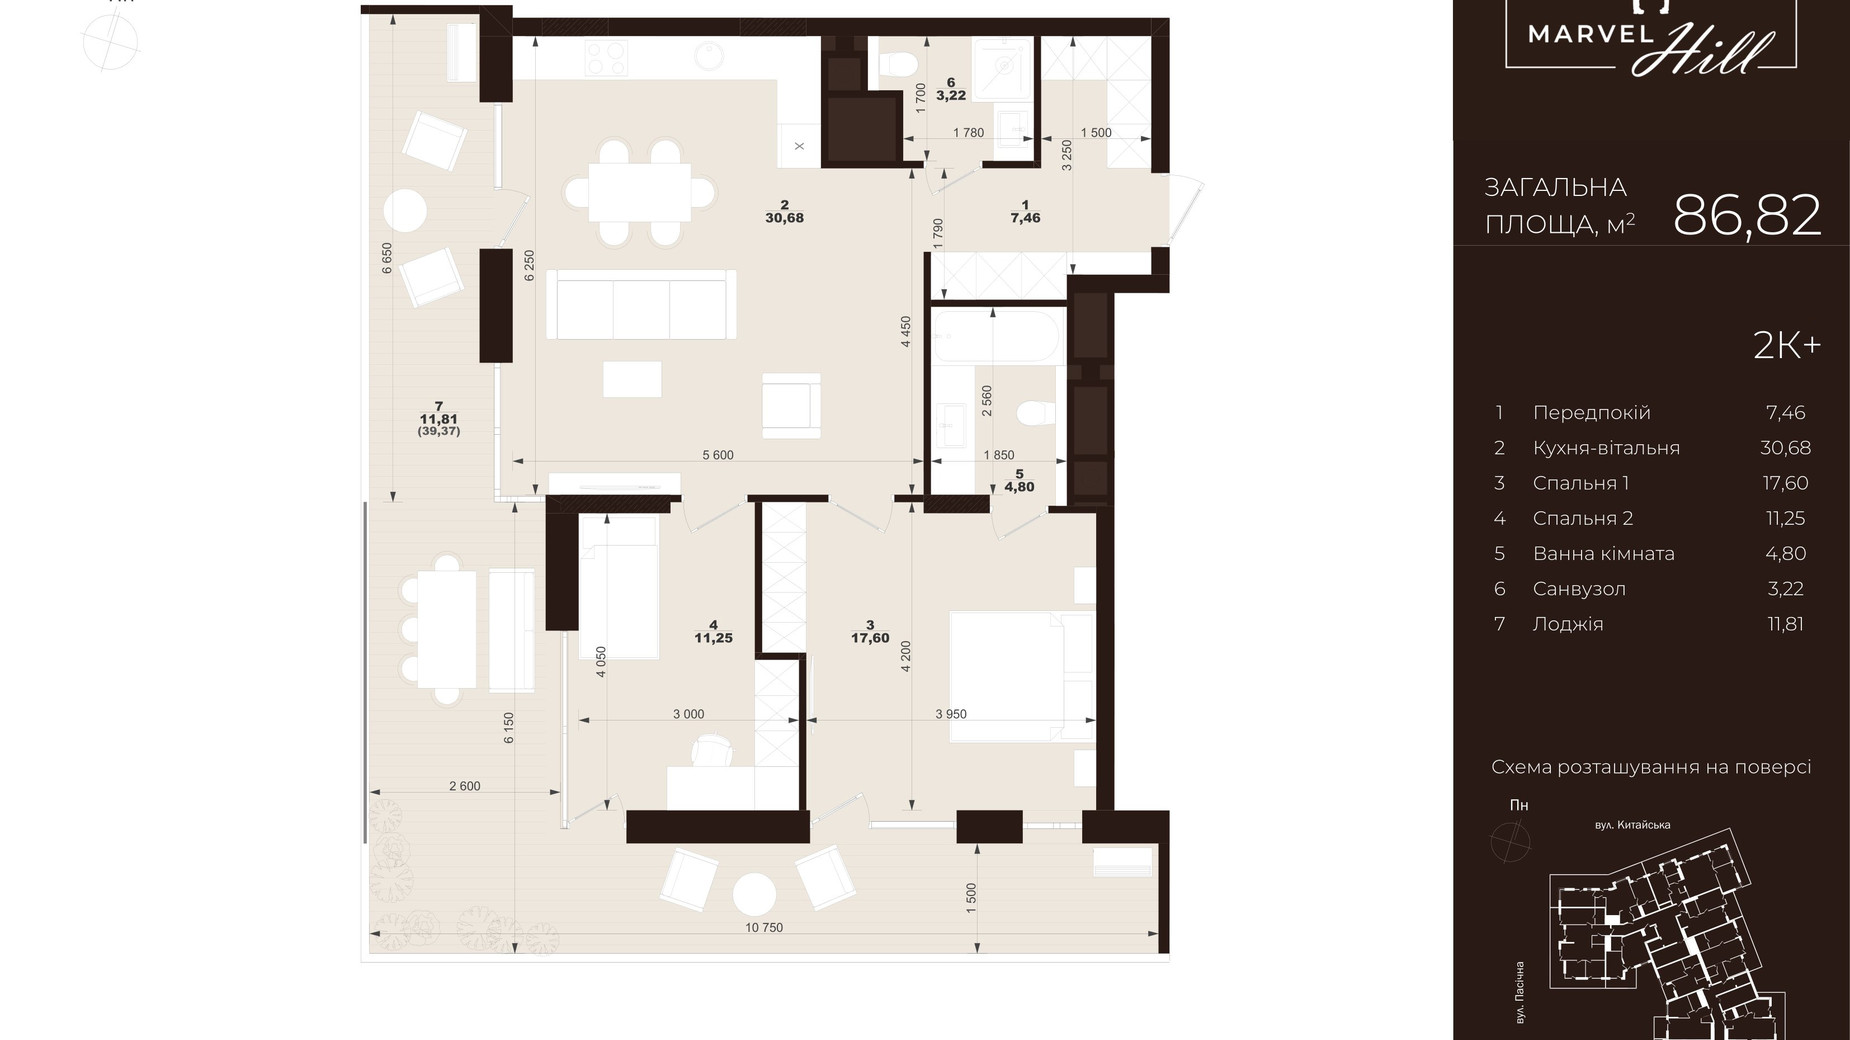 Планировка 2-комнатной квартиры в ЖК Marvel Hill 86.82 м², фото 602107